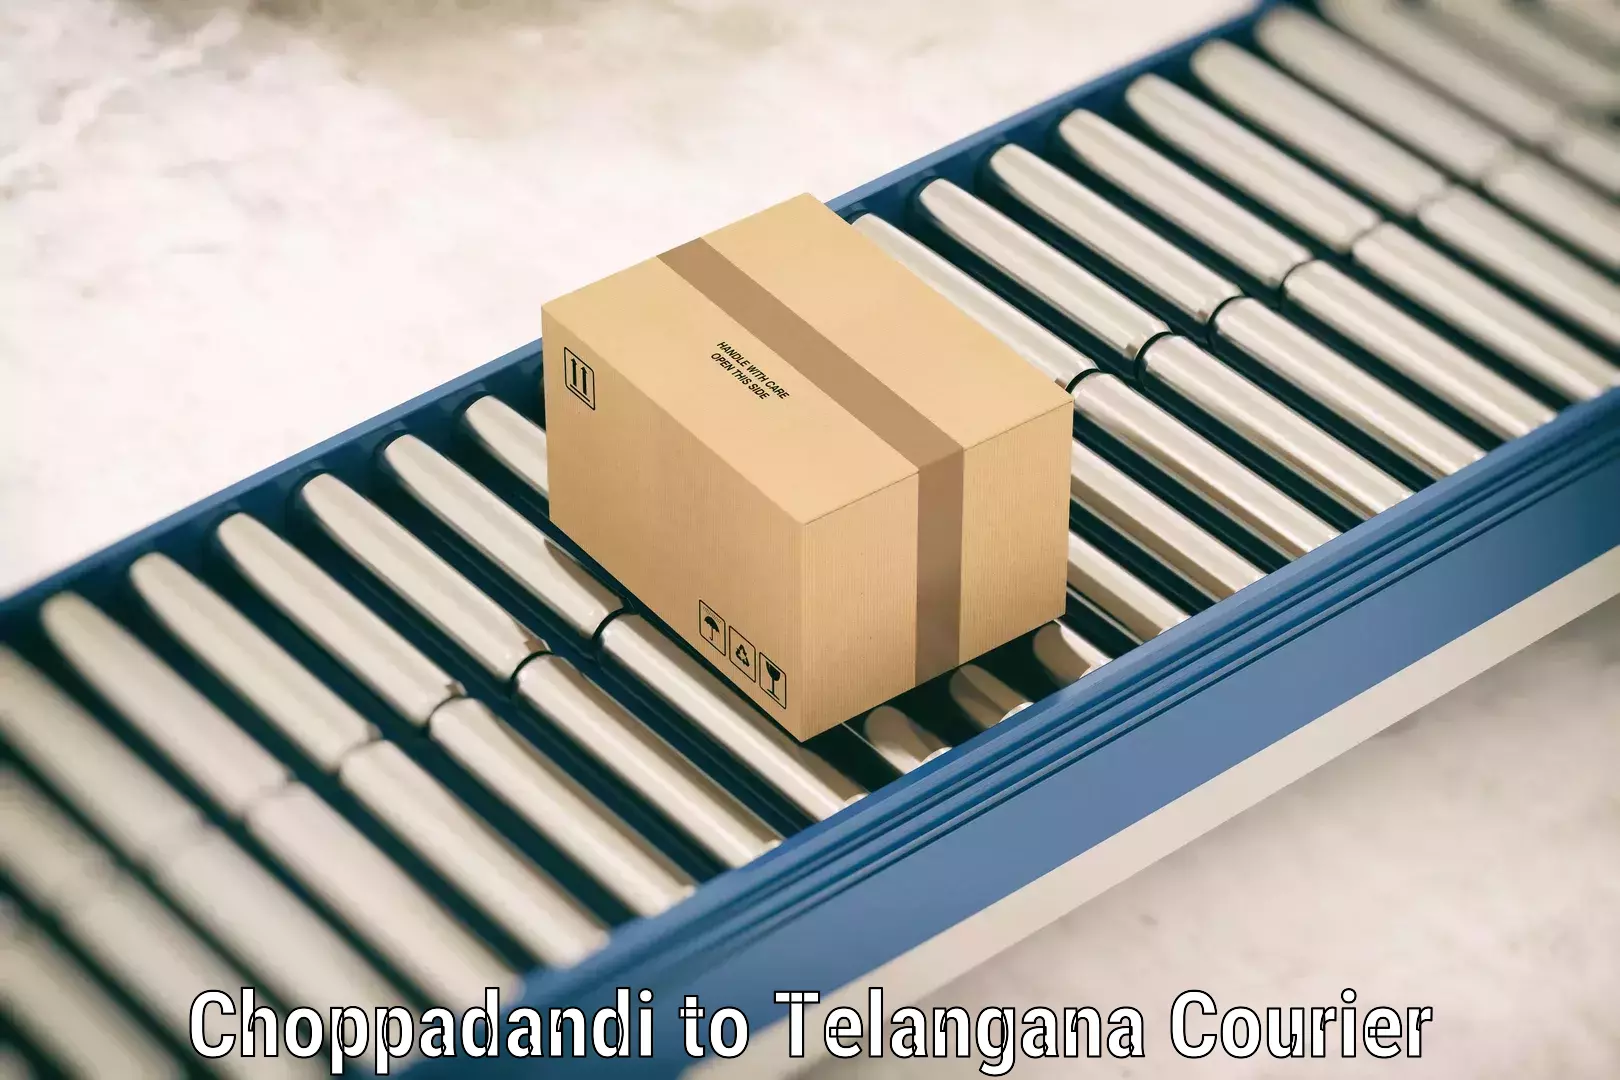 Luggage delivery optimization Choppadandi to Bhupalpally